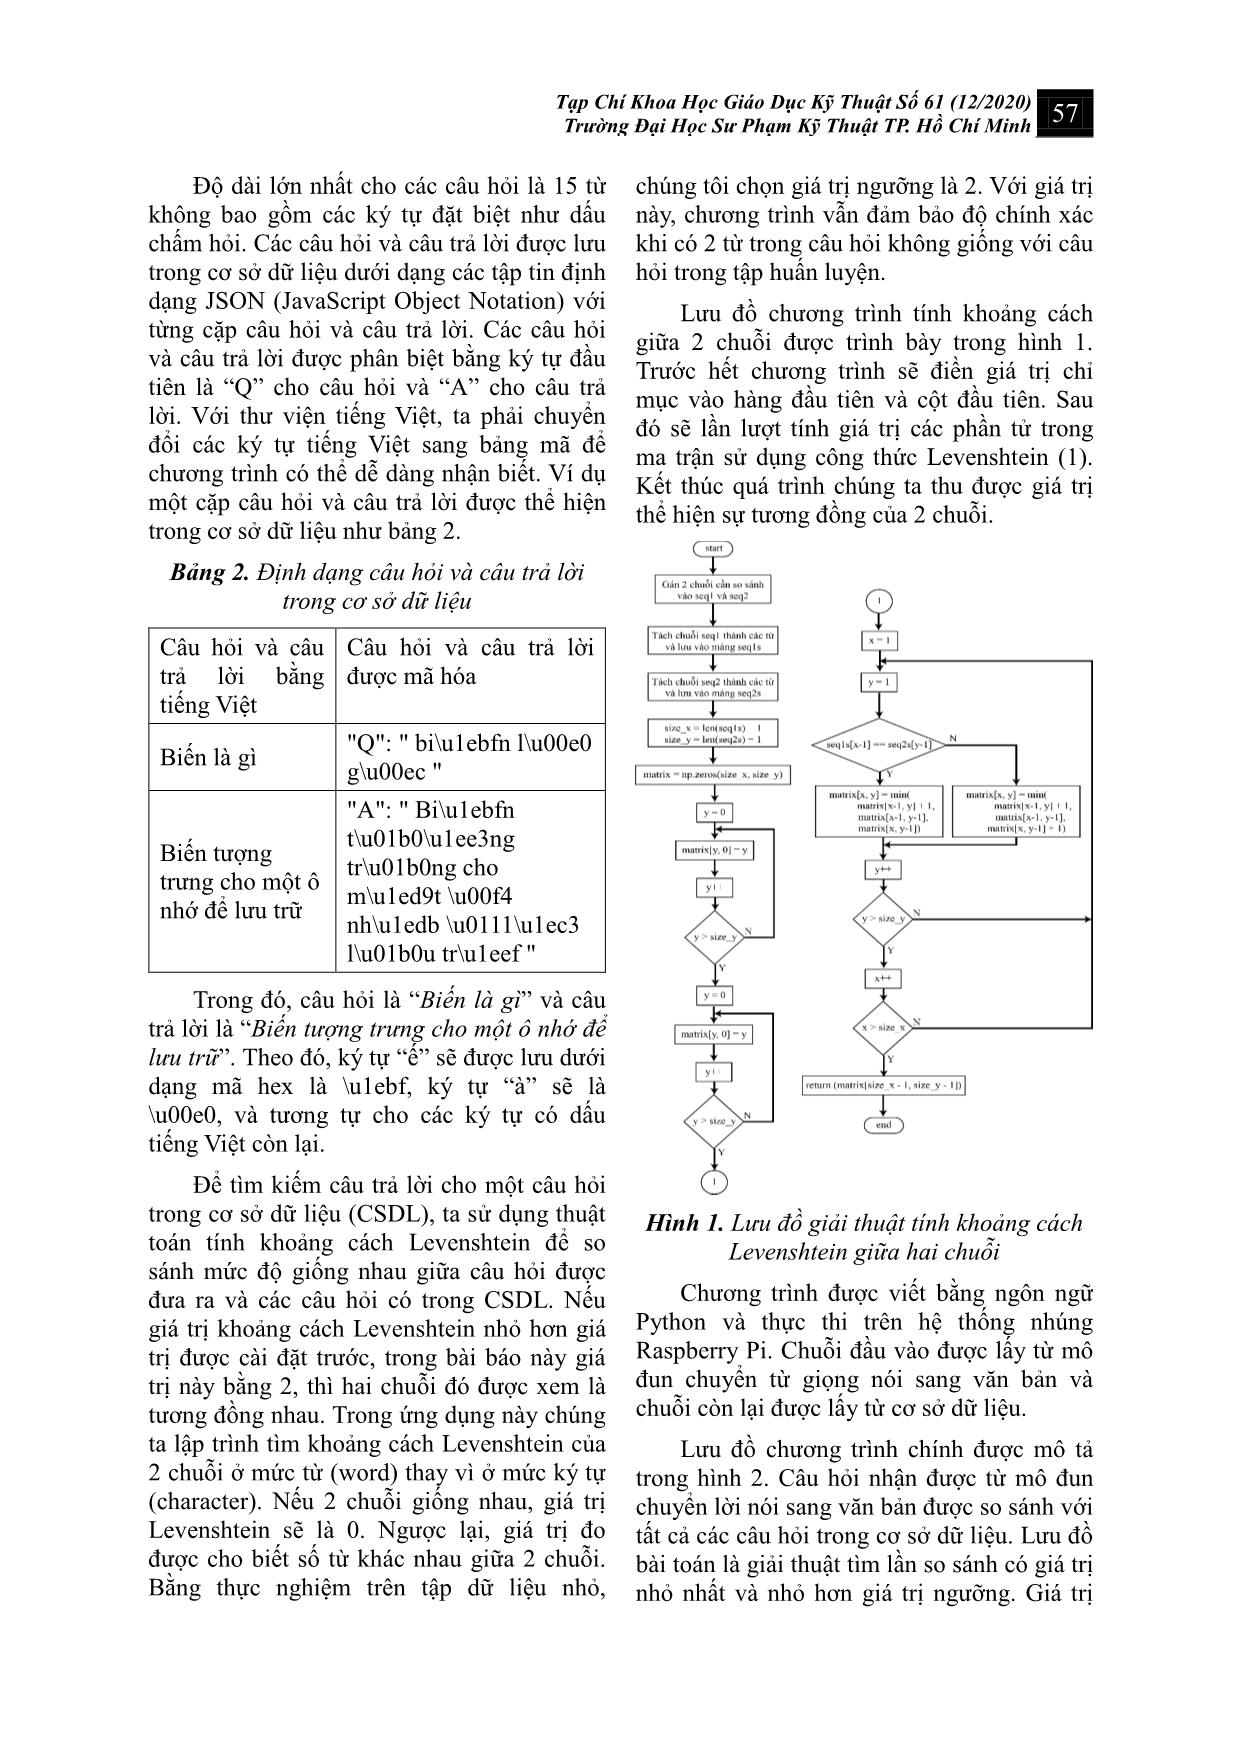 Thiết kế chatbot sử dụng thuật toán khoảng cách Levenshtein trên Raspberry trang 3